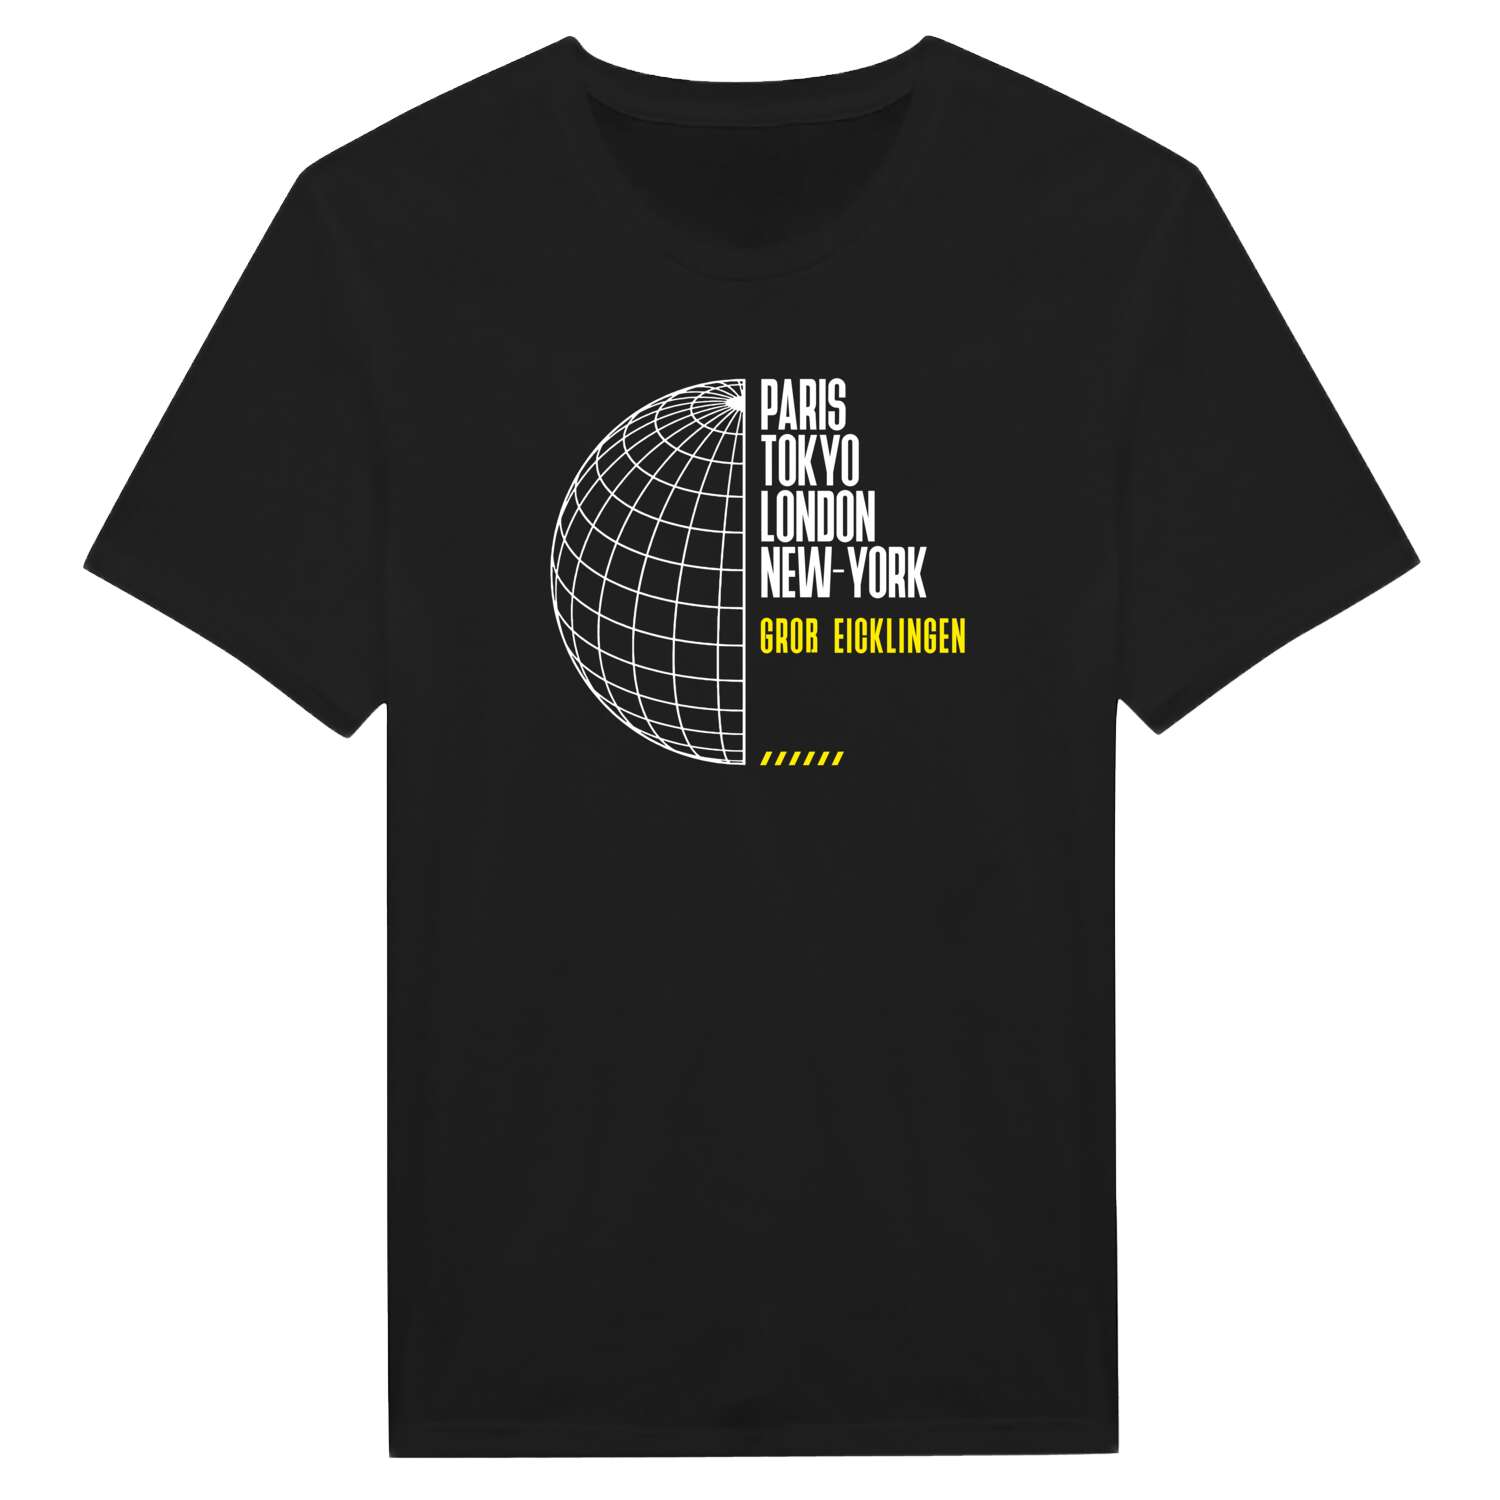 Groß Eicklingen T-Shirt »Paris Tokyo London«